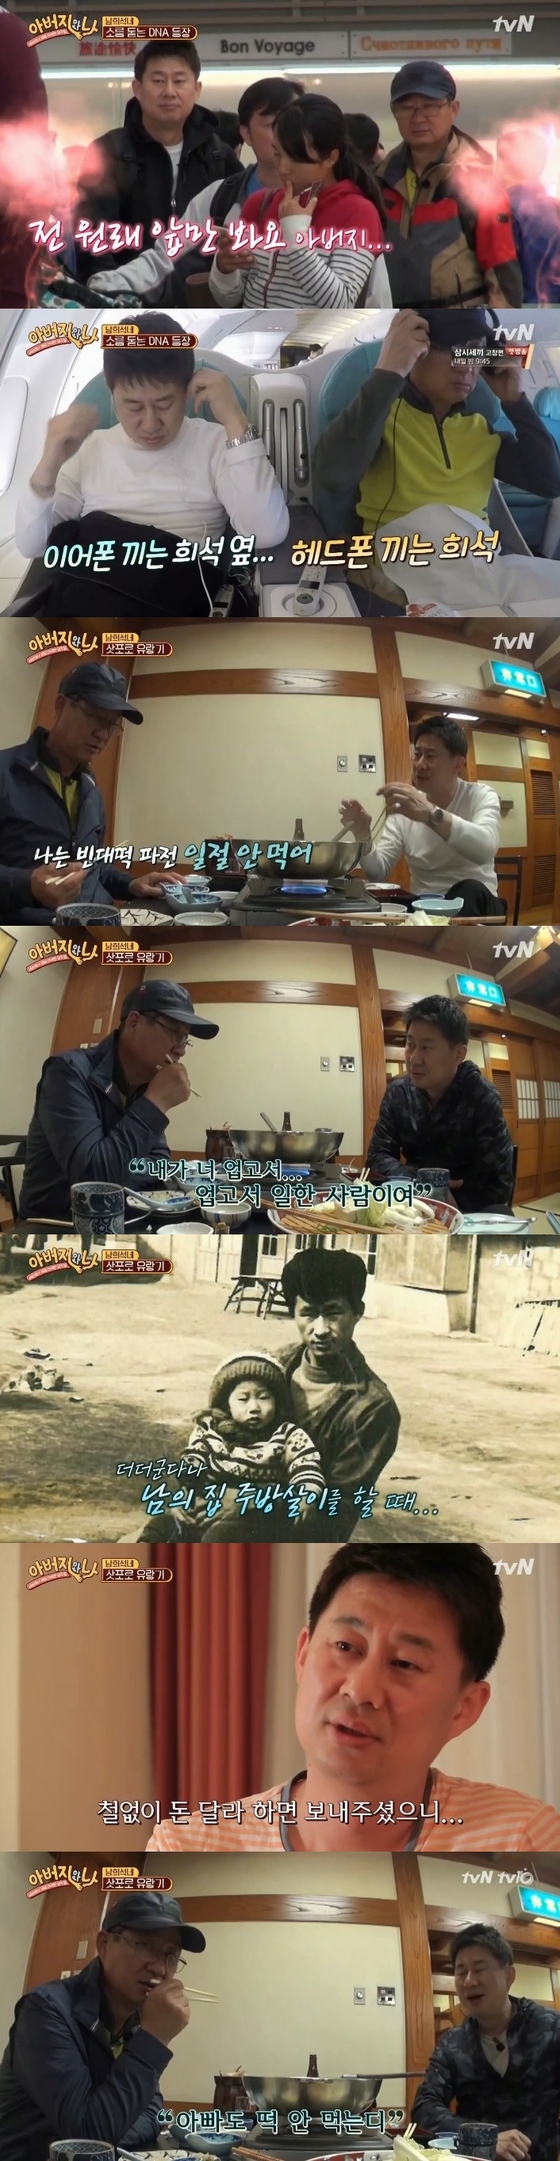 남희석 부자가 닮은꼴 부자로 눈길을 끌었다. © News1star / tvN '아버지와 나' 캡처